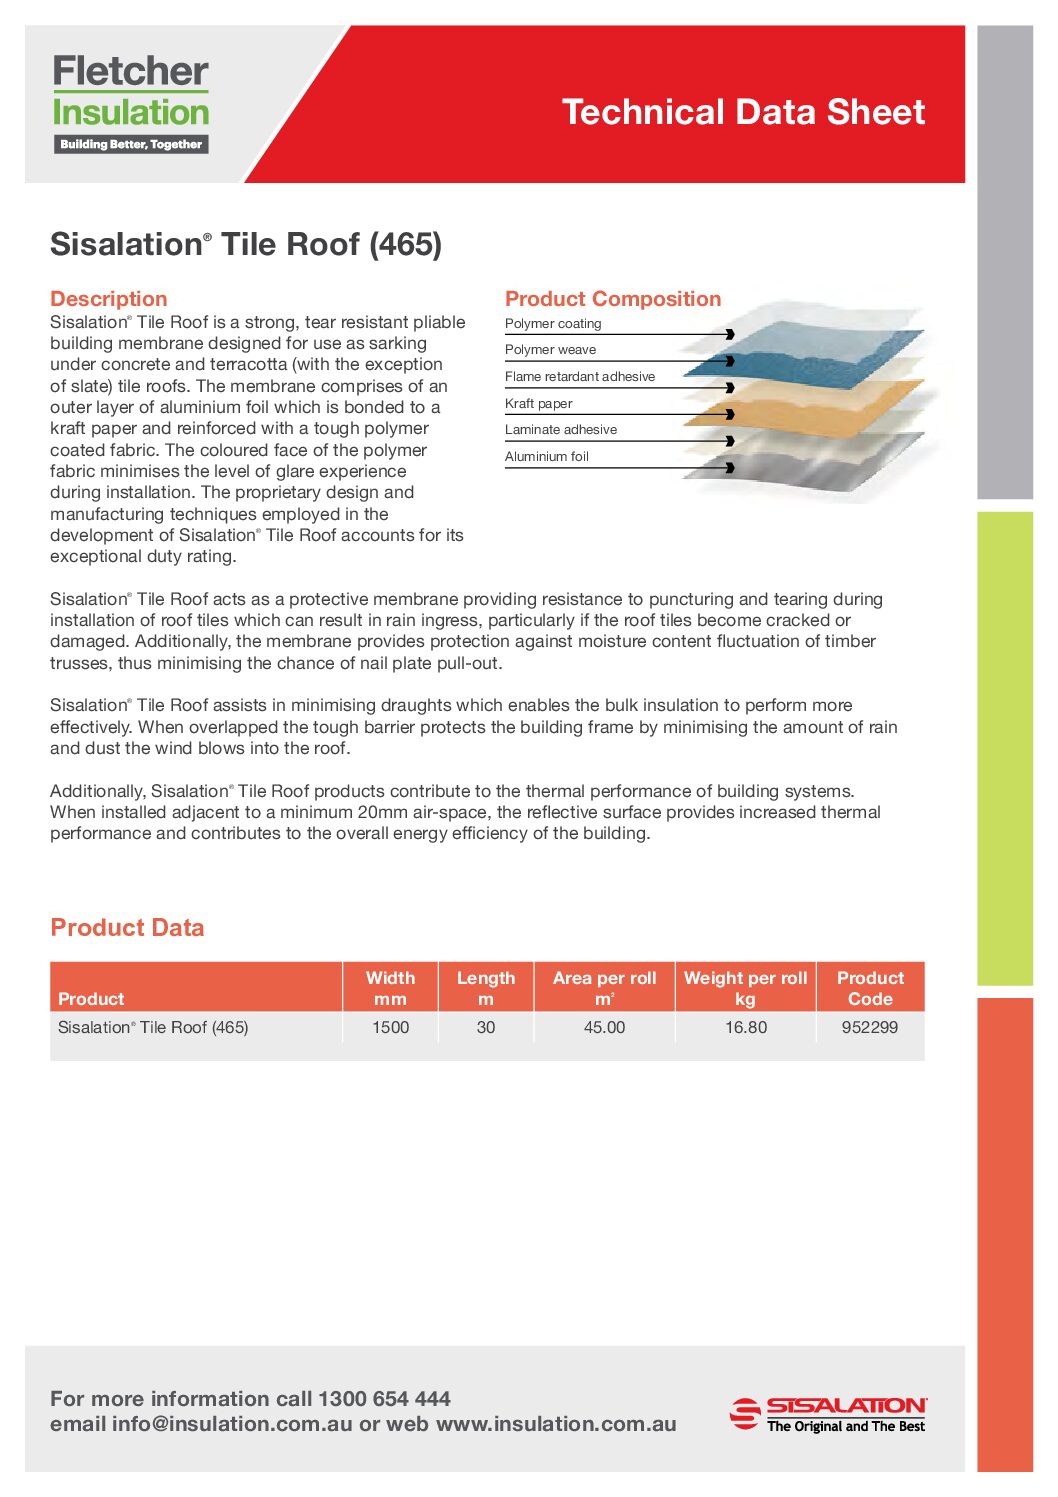 Sisalation® Tile Roof Technical Data Sheet